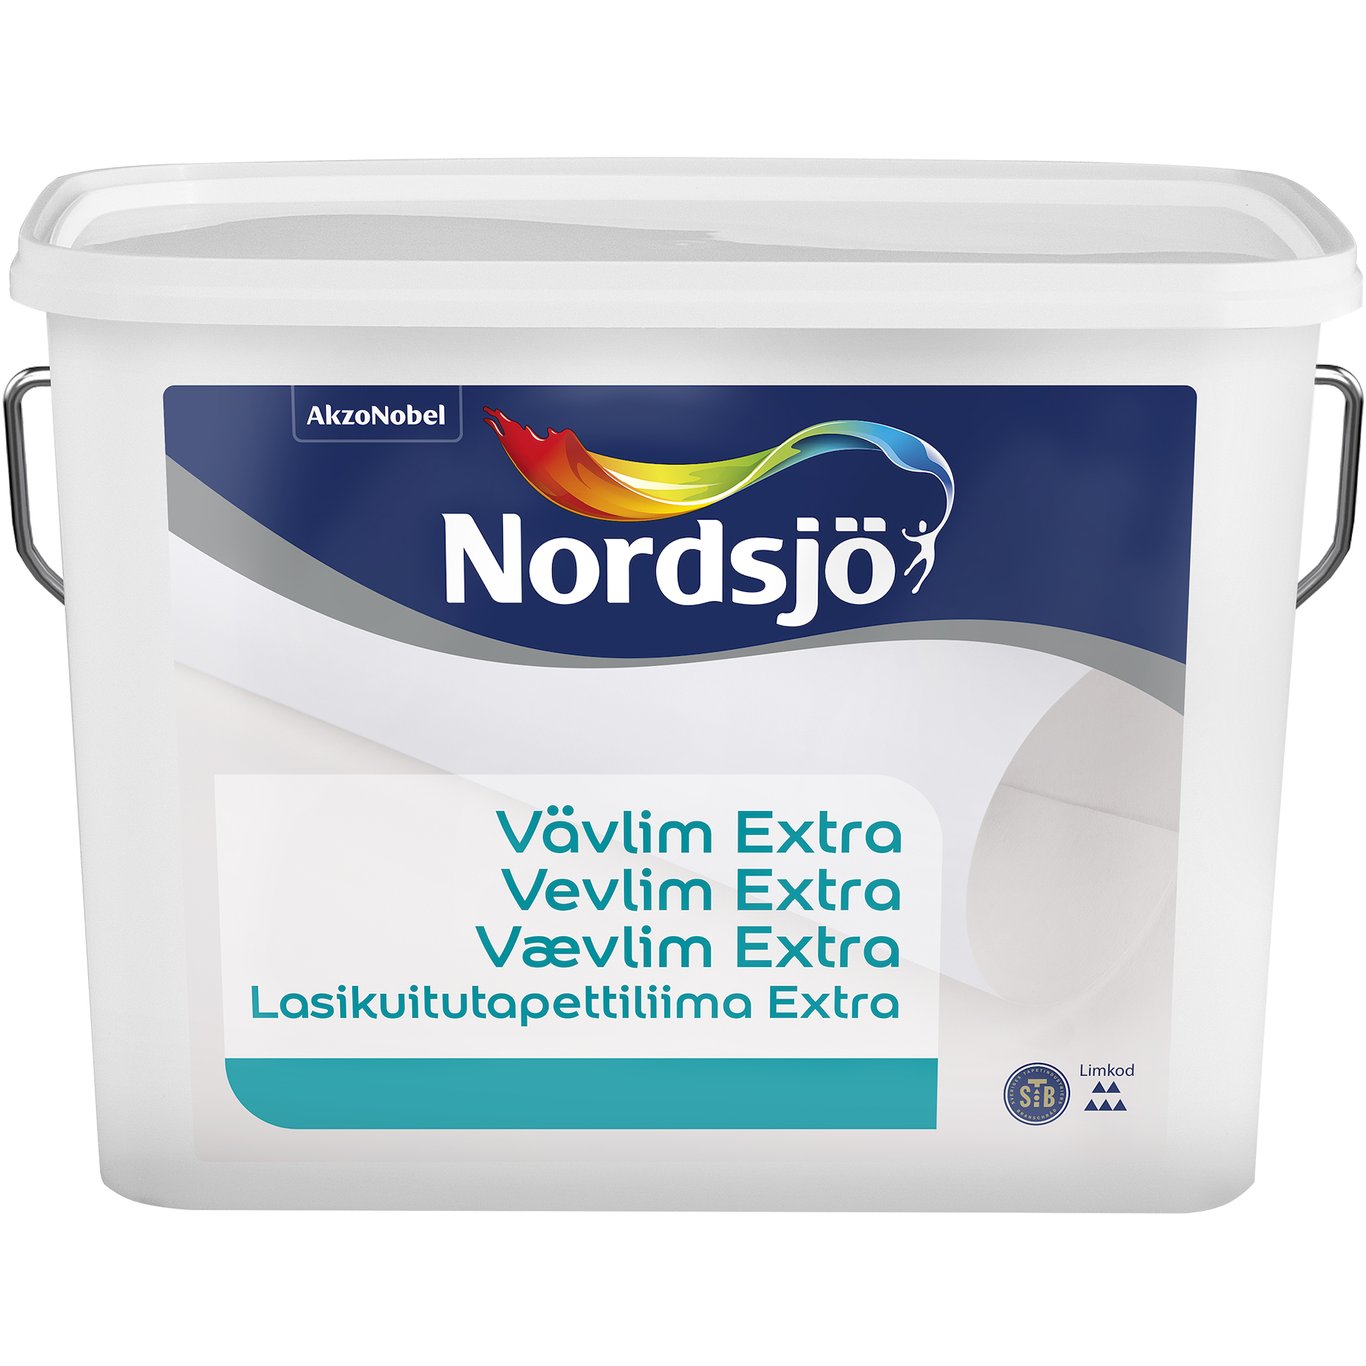 NORDSJØ VEVLIM EXTRA 1L